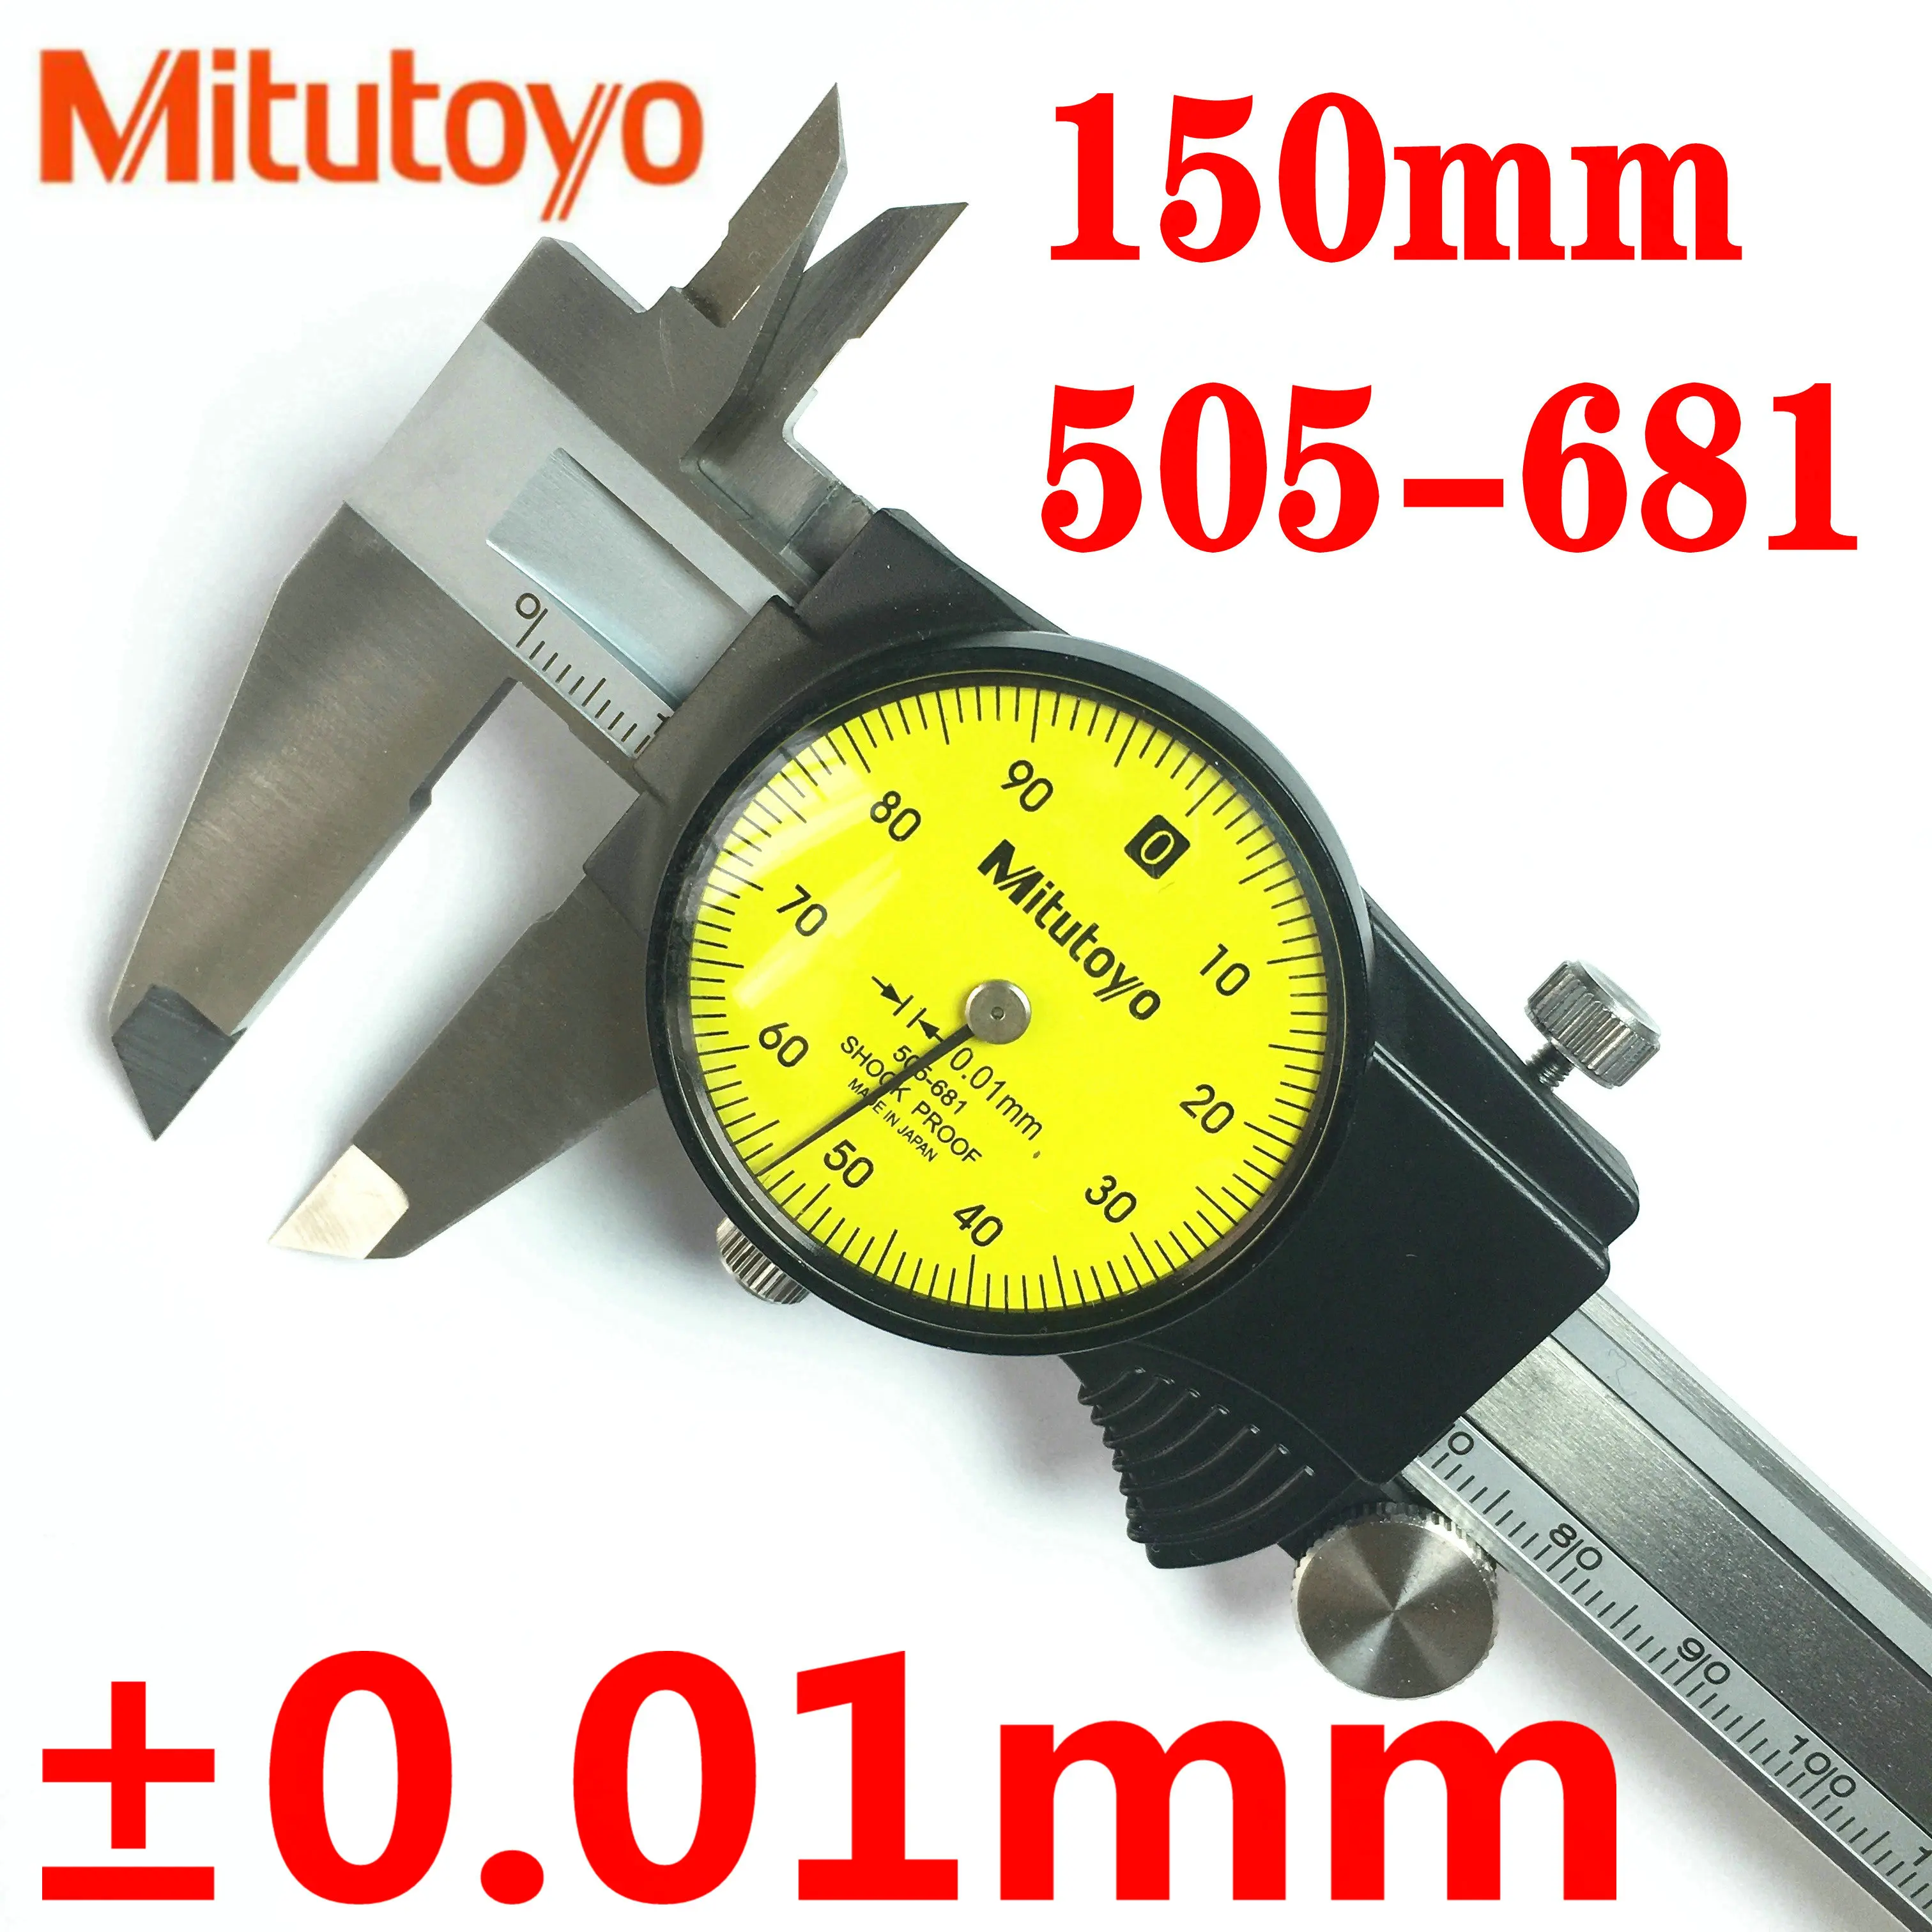 

Japan Mitutoyo Dial Digital Caliper 0-150mm/0.01 505-681 D15TN Calibre Stainless Steel Vernier Calipers Measuring Tools